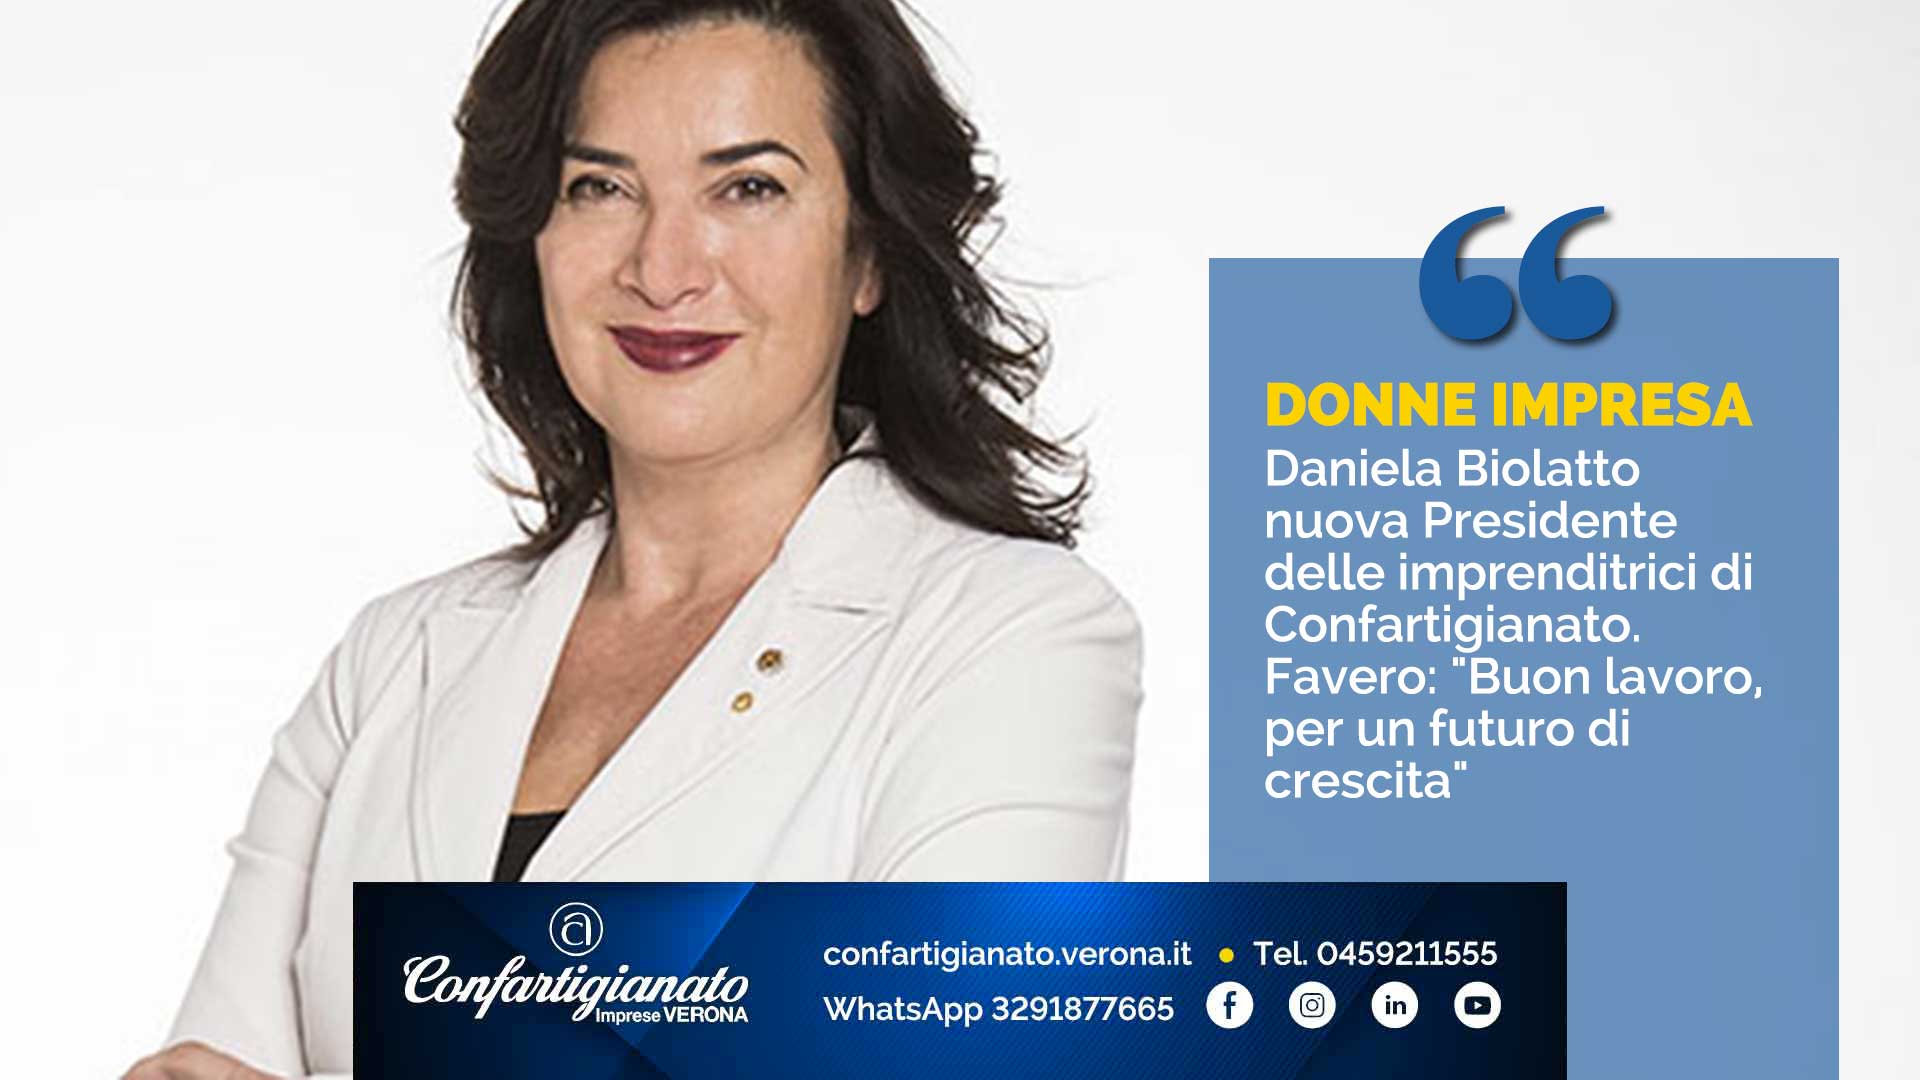 DONNE IMPRESA – Daniela Biolatto nuova Presidente delle imprenditrici di Confartigianato. Favero: "Buon lavoro, per un futuro di crescita"